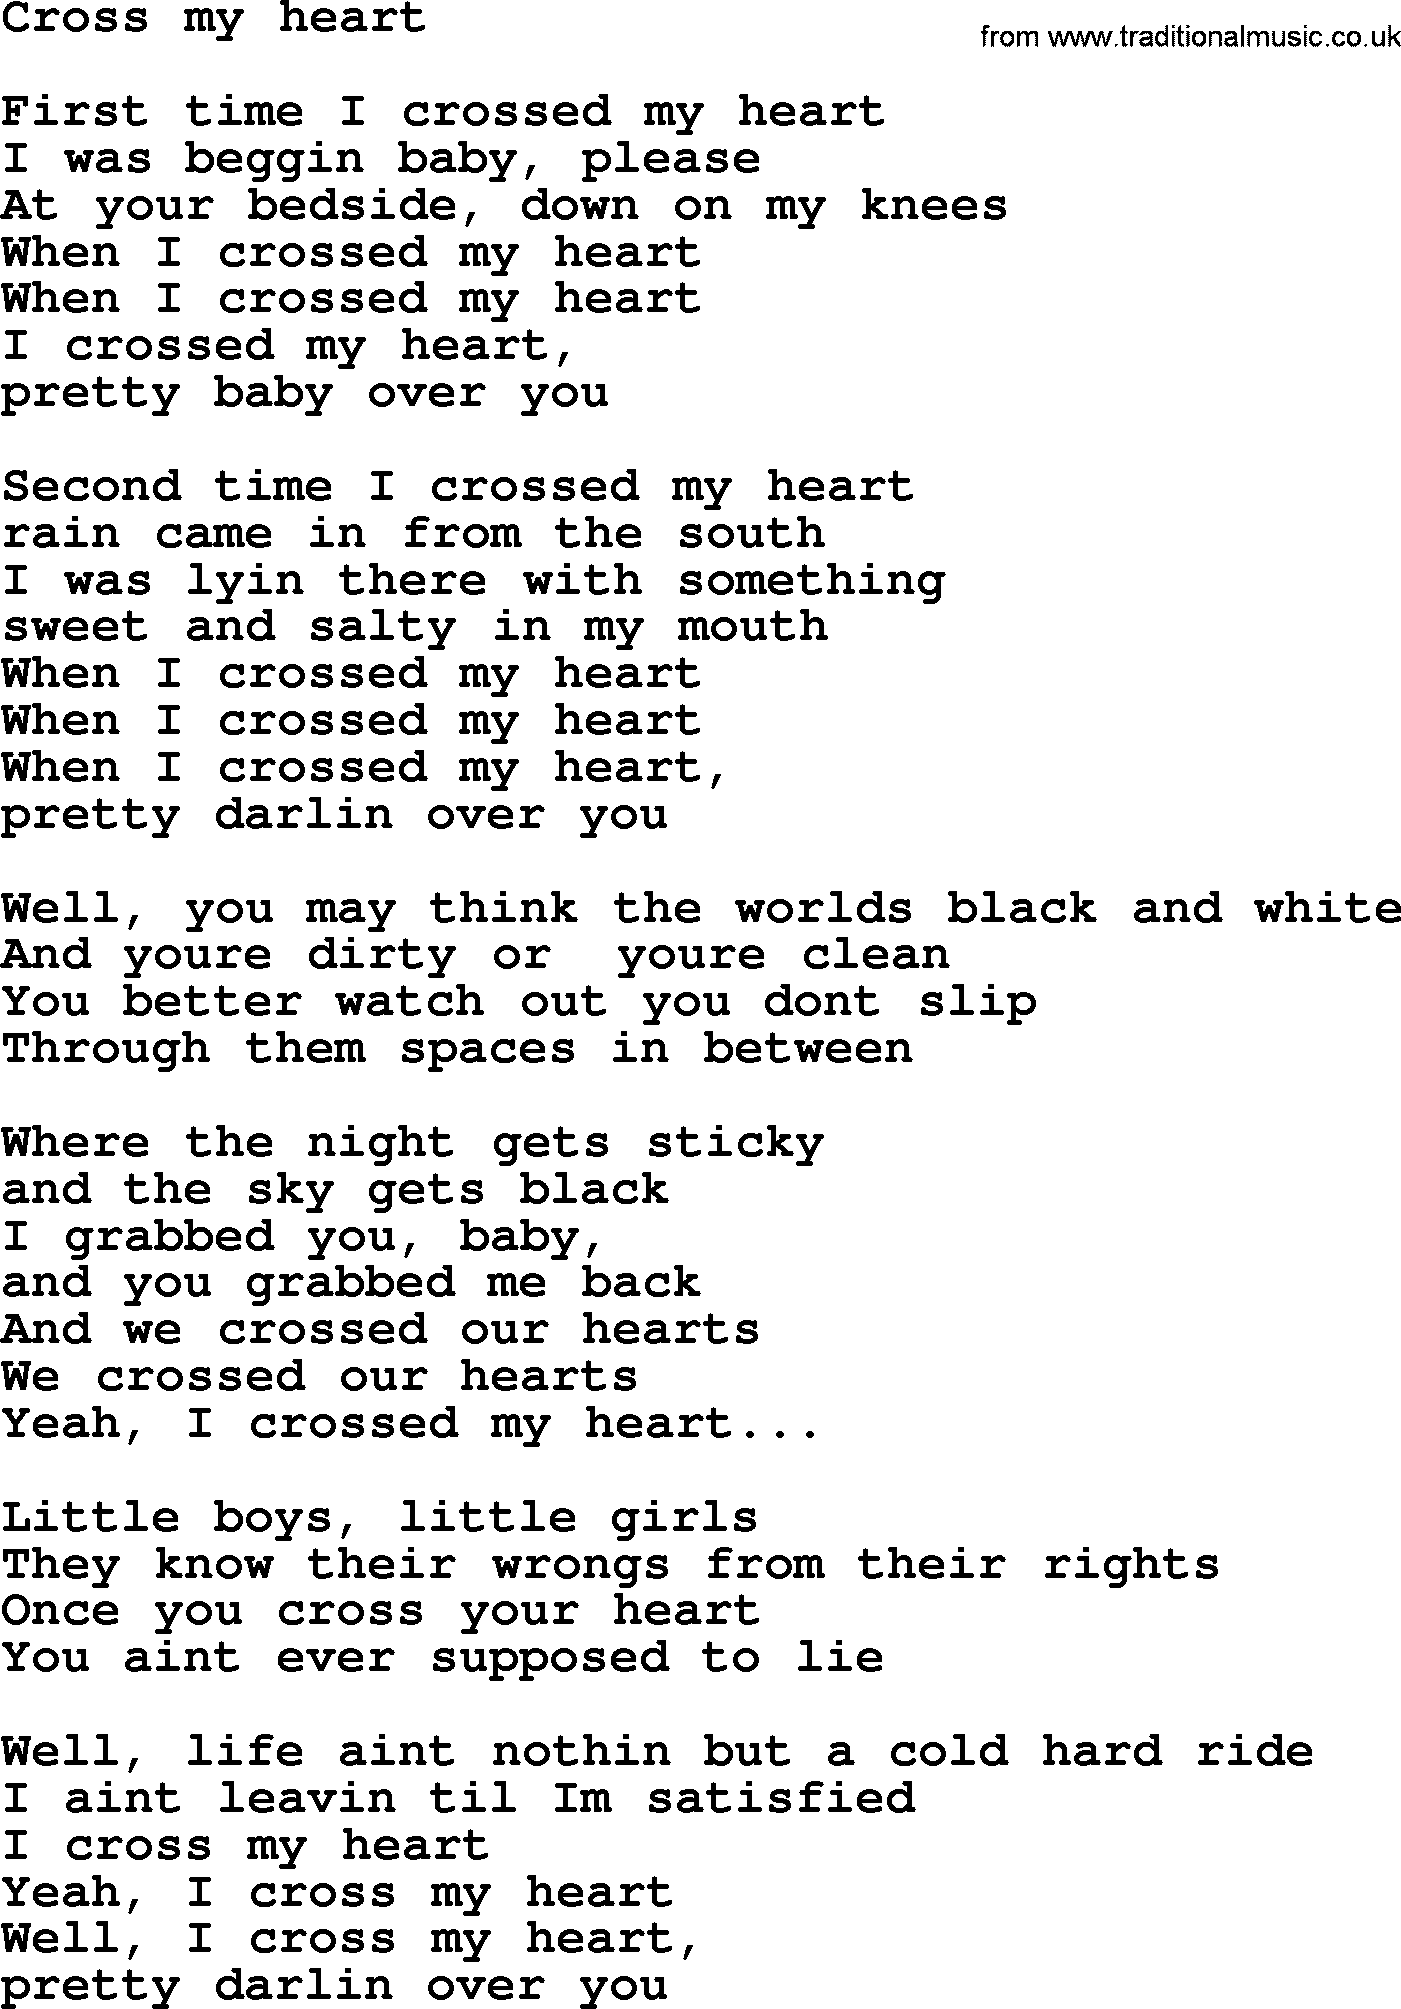 Bruce Springsteen song: Cross My Heart lyrics